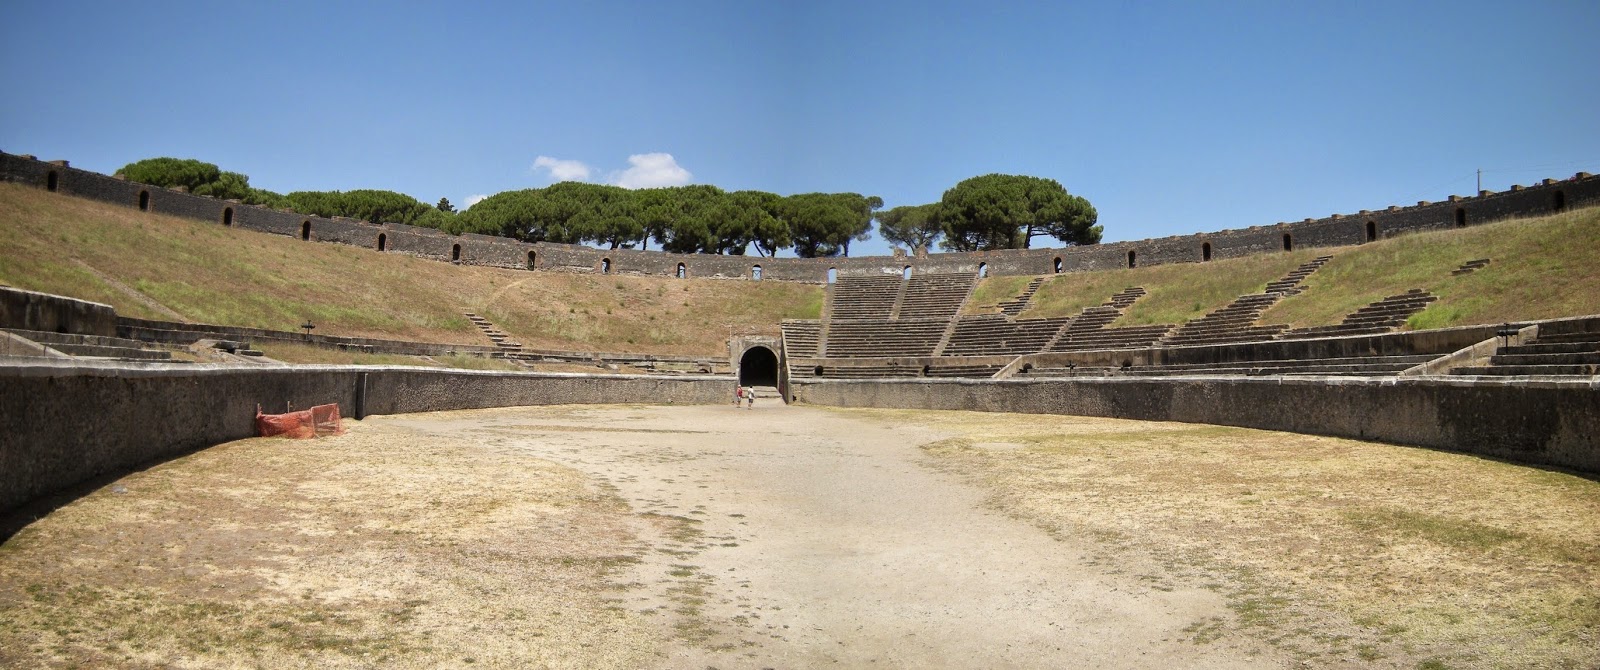 Es el Anfiteatro de piedra más antiguo conocido en Roma